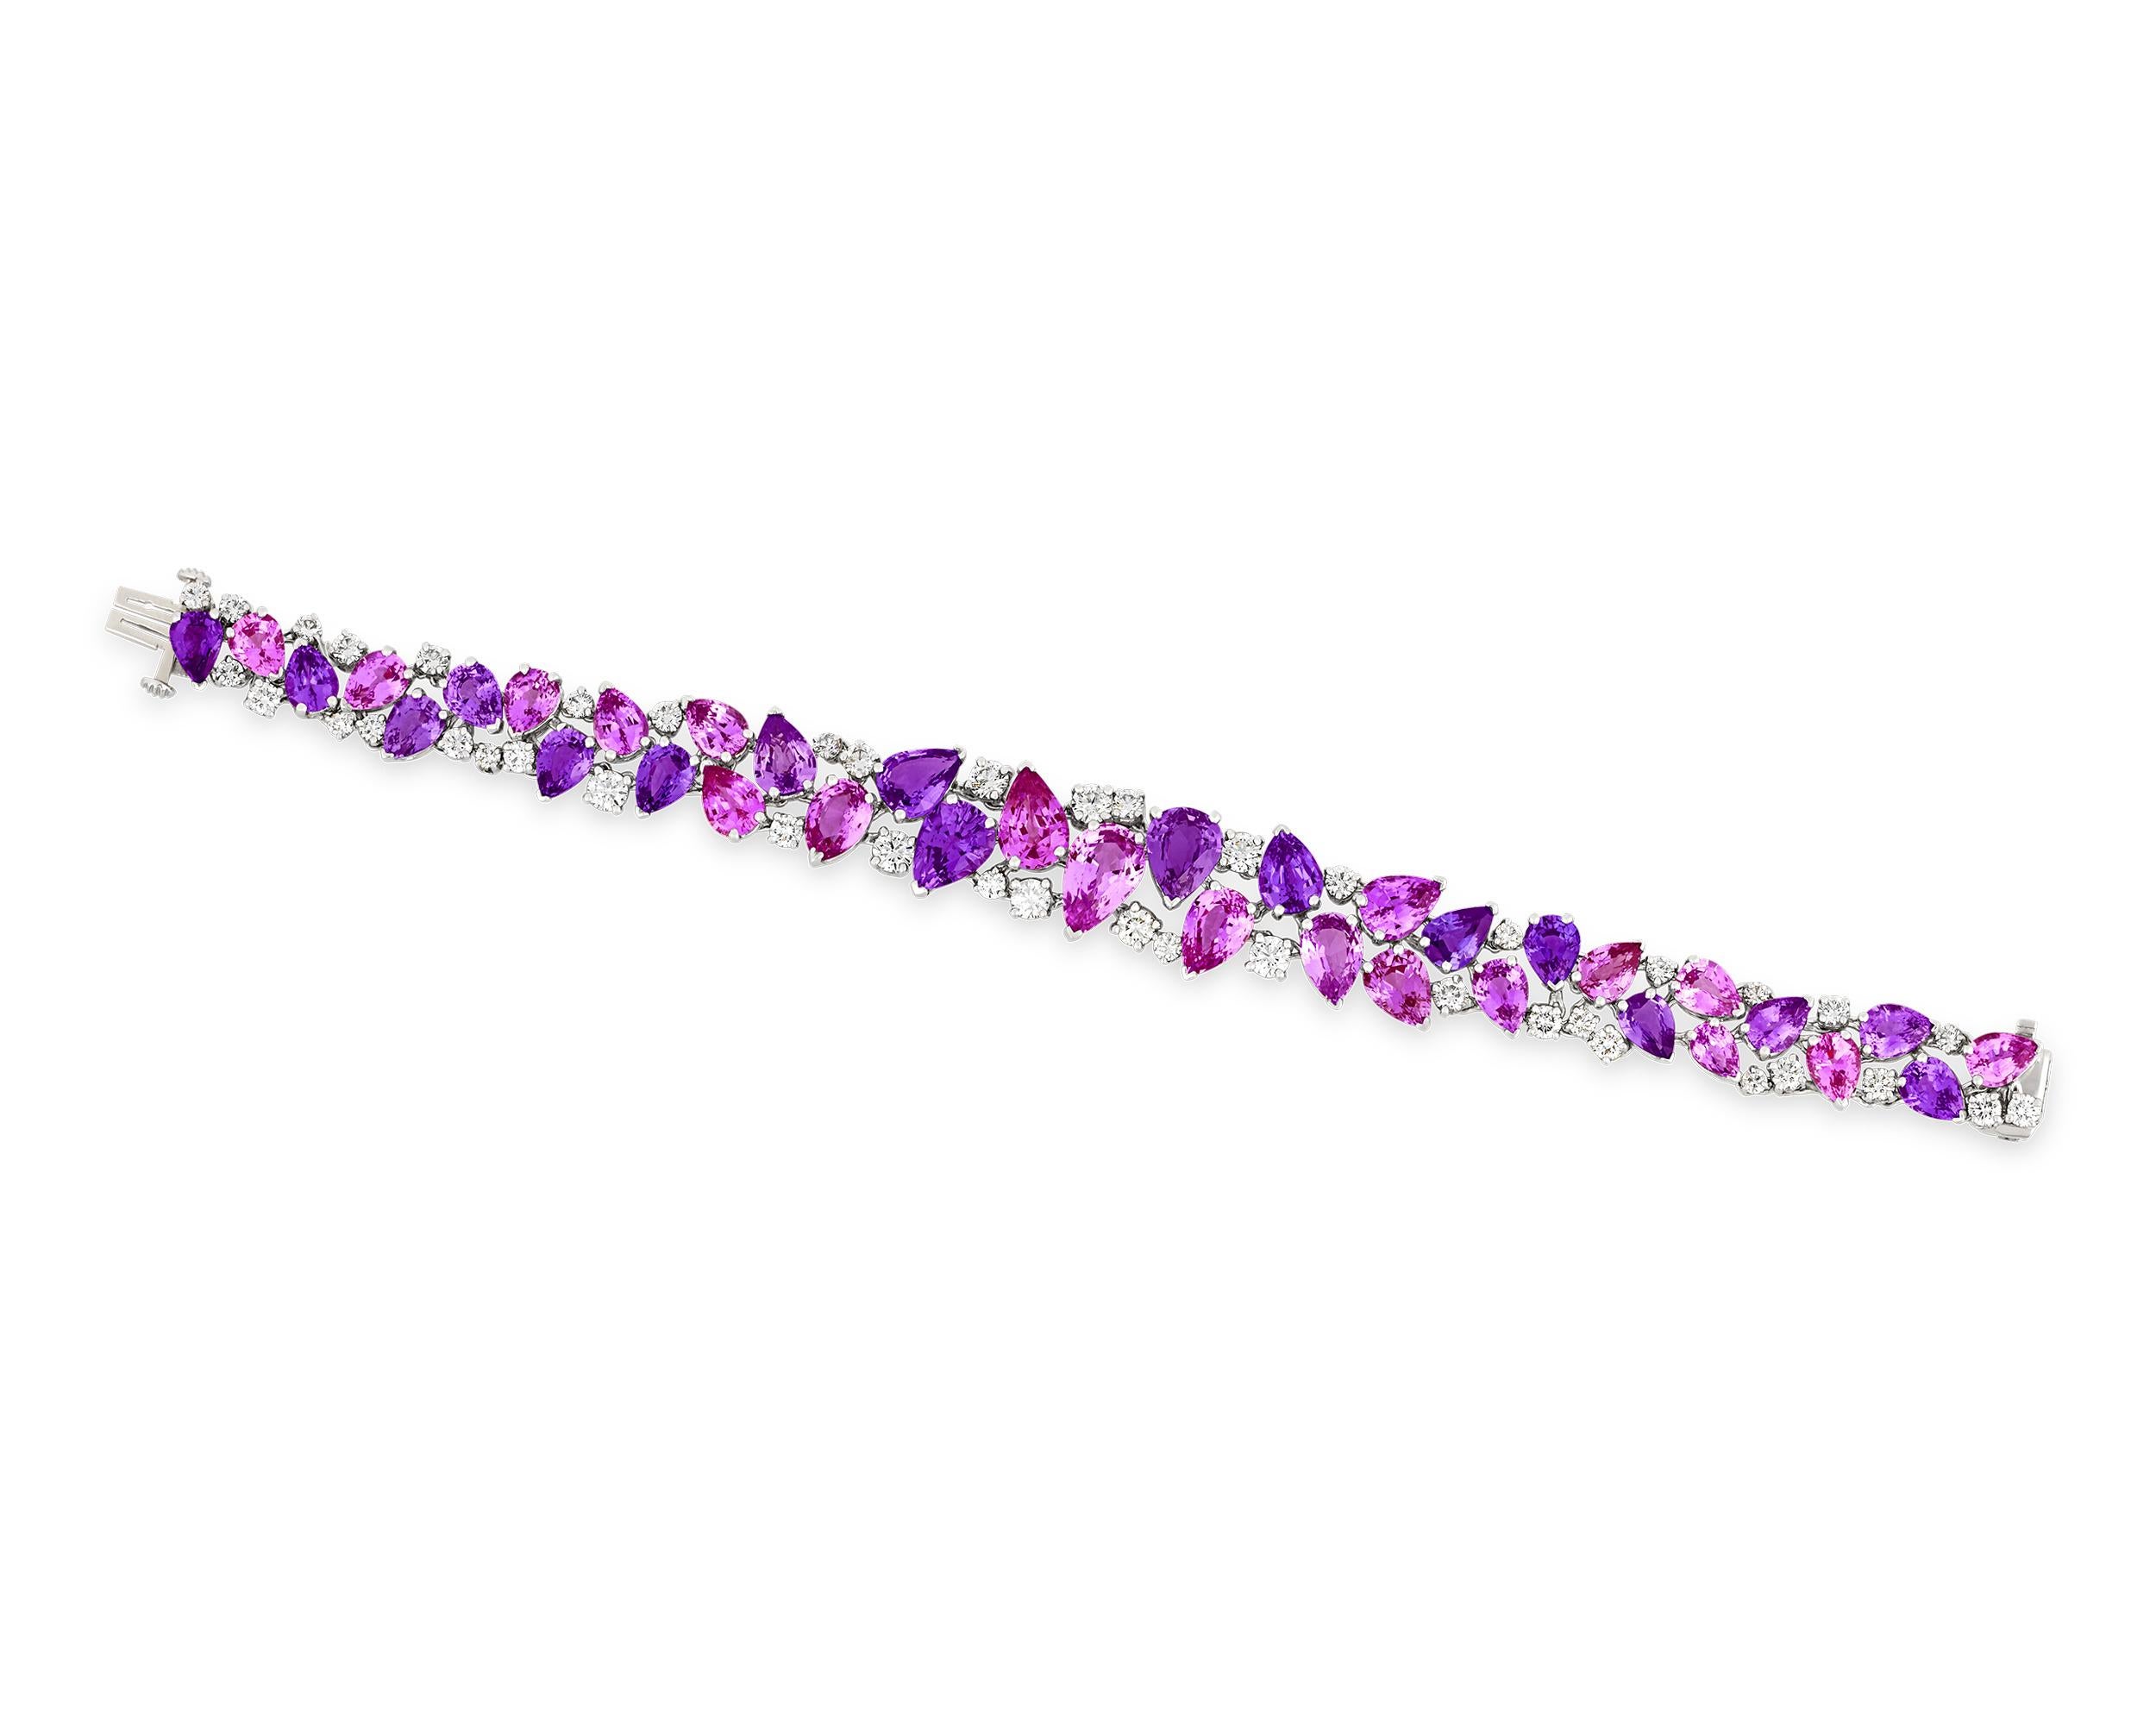 Réalisé par le célèbre joaillier américain Oscar Heyman, ce bracelet est orné de trente-six saphirs roses et violets en forme de poire parfaitement assortis. Les gemmes romantiques sont certifiées par le Gemological Institute of America et